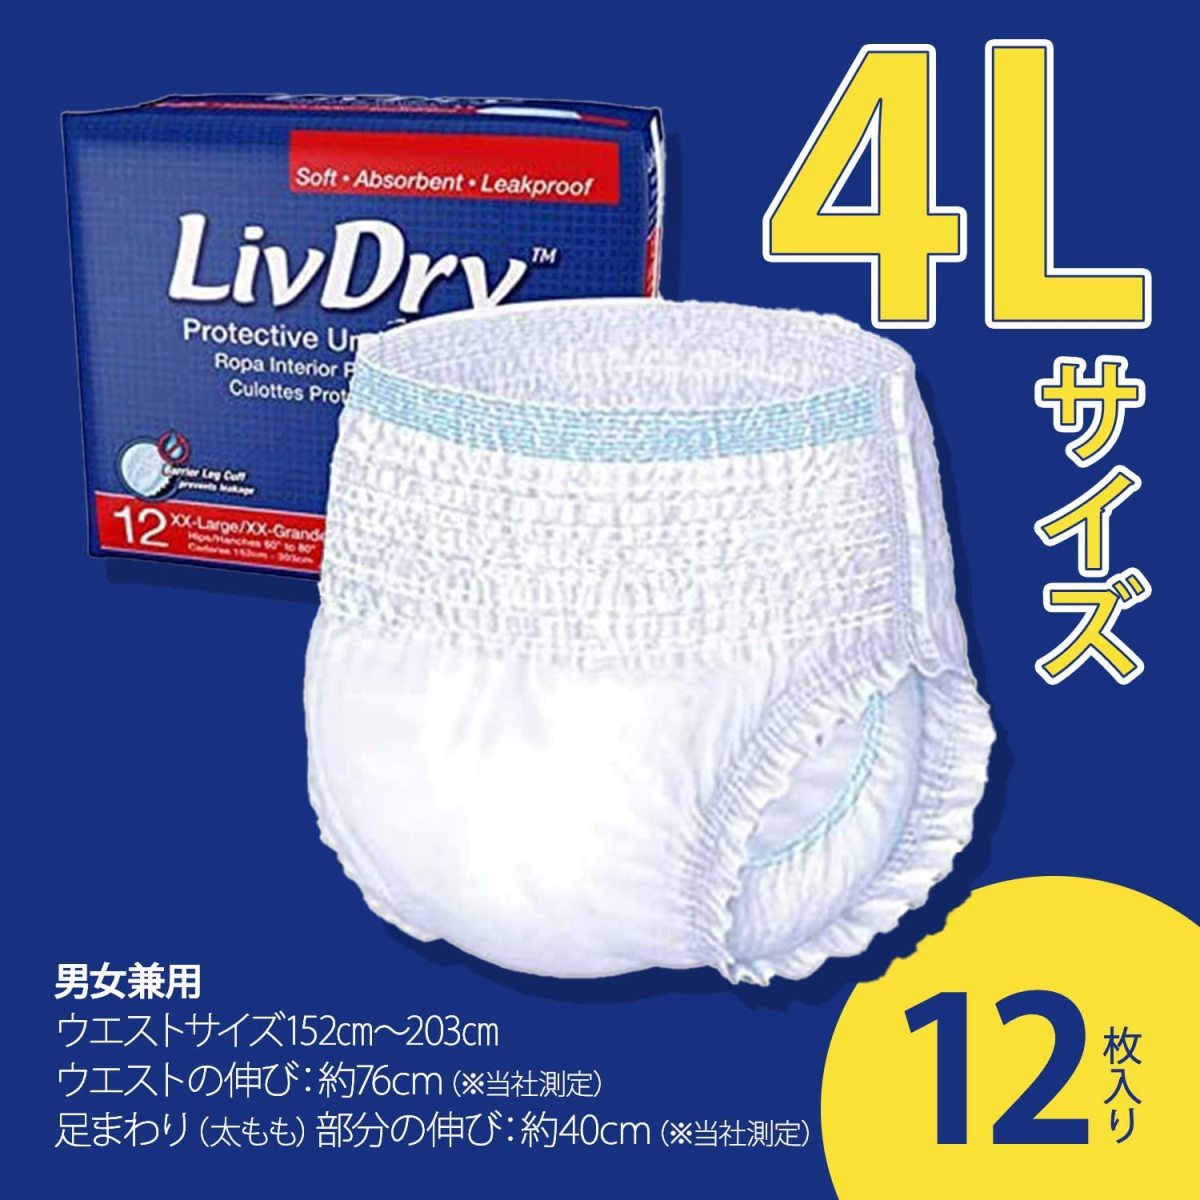  для взрослых одноразовые подгузники 4L размер LivDry ребра dry 12 листов входит 4 раз всасывание 4L большой человек для большой размер уход бумага брюки li - bili брюки мужчина женщина производитель прямые продажи 